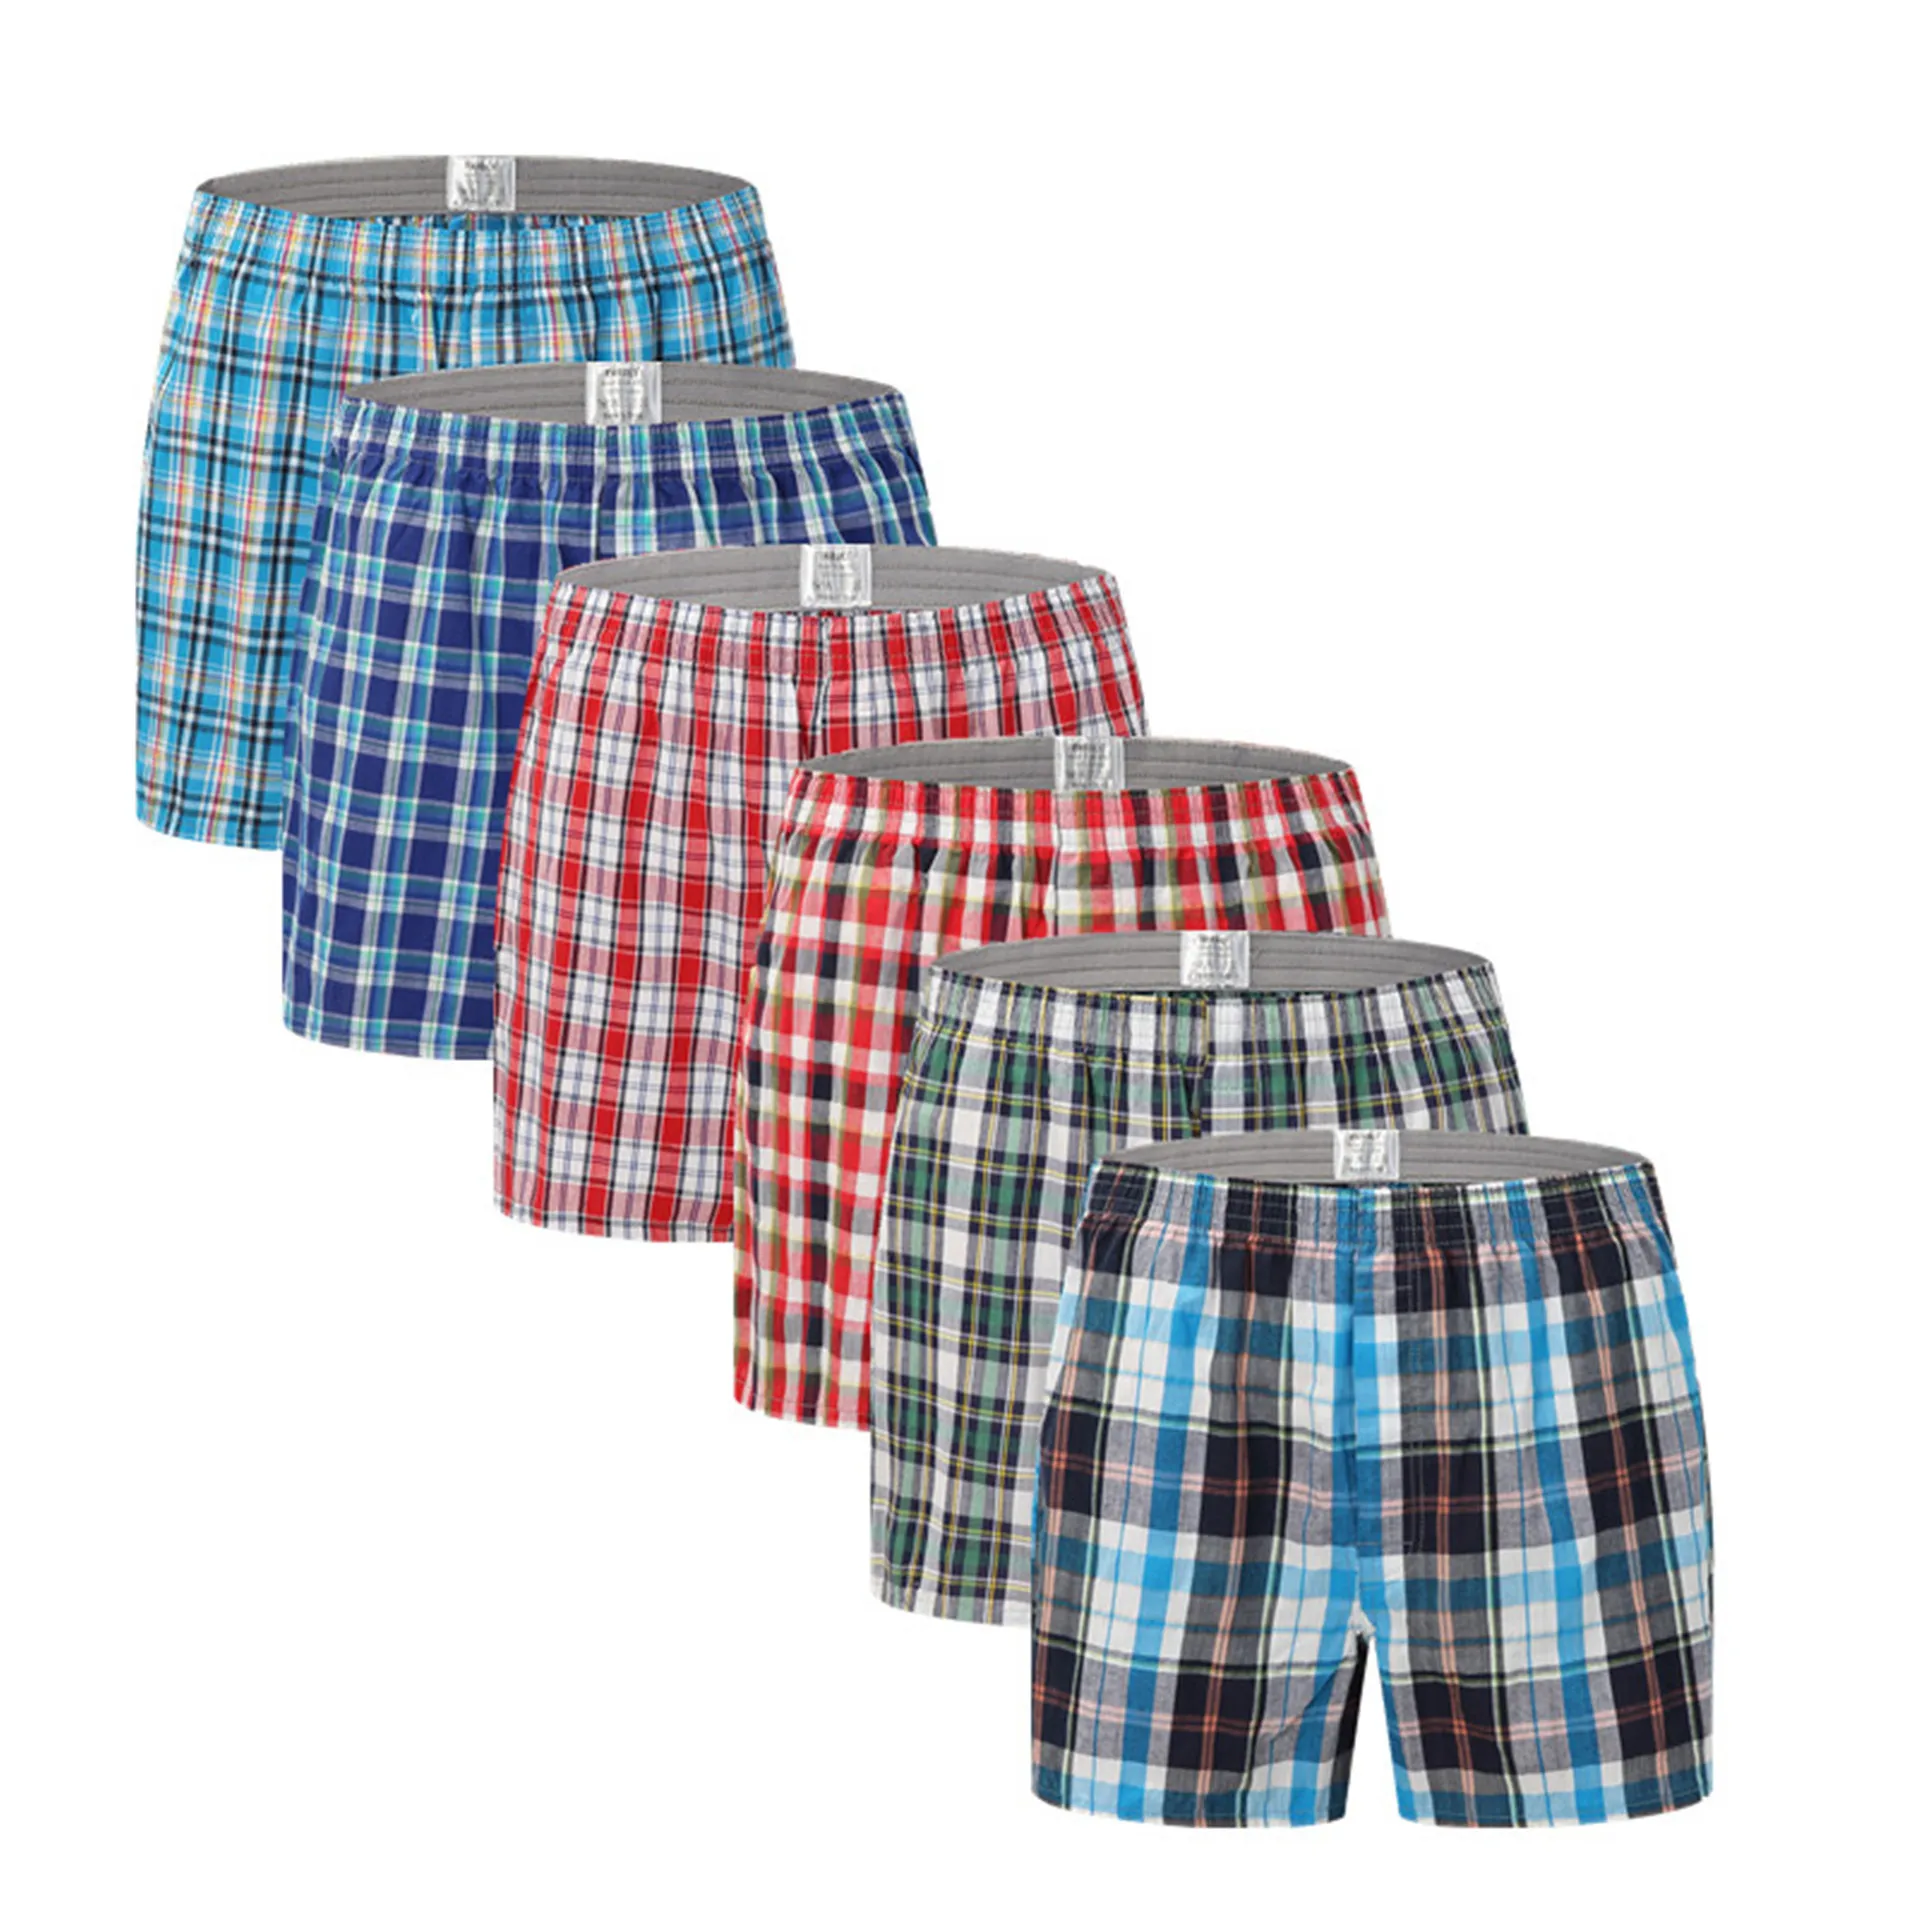 3Pcs/Lot 100% Cotton Men's Panties Boxers Plaid Comfortable Male Shorts Underpant Plus Size 5XL 6XL underwear bermuda masculina